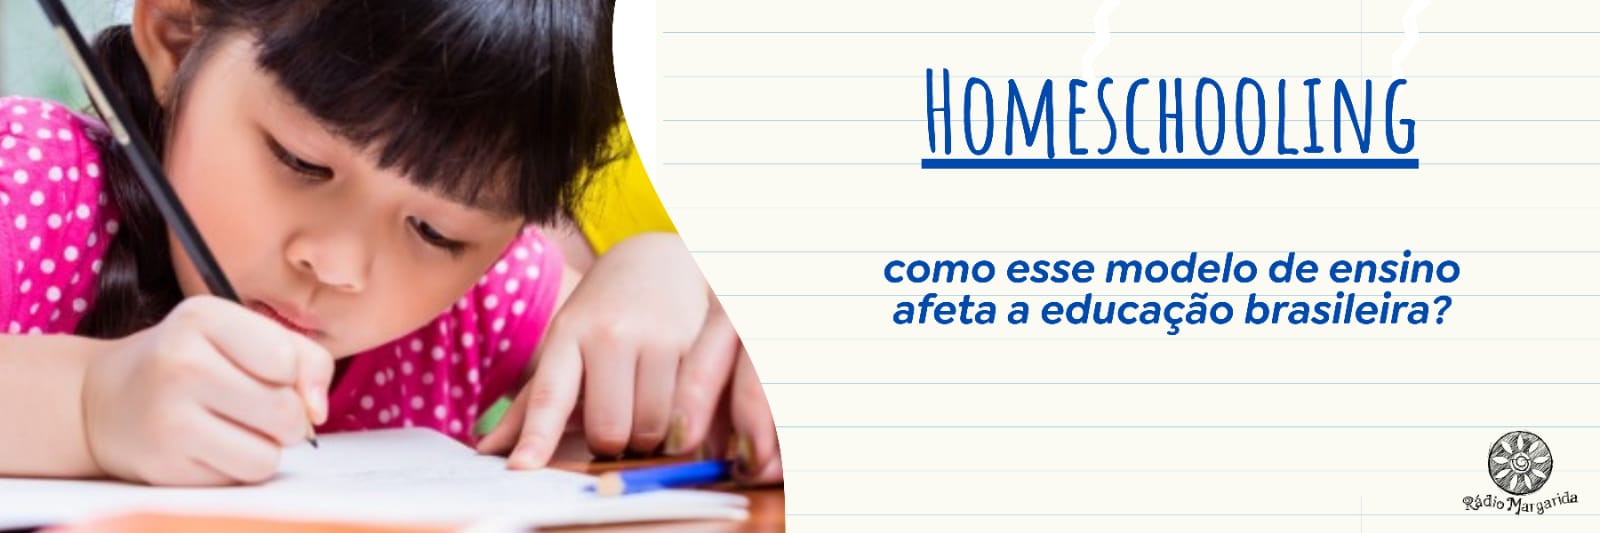 Homeschooling: como esse modelo de ensino afeta a educação brasileira?